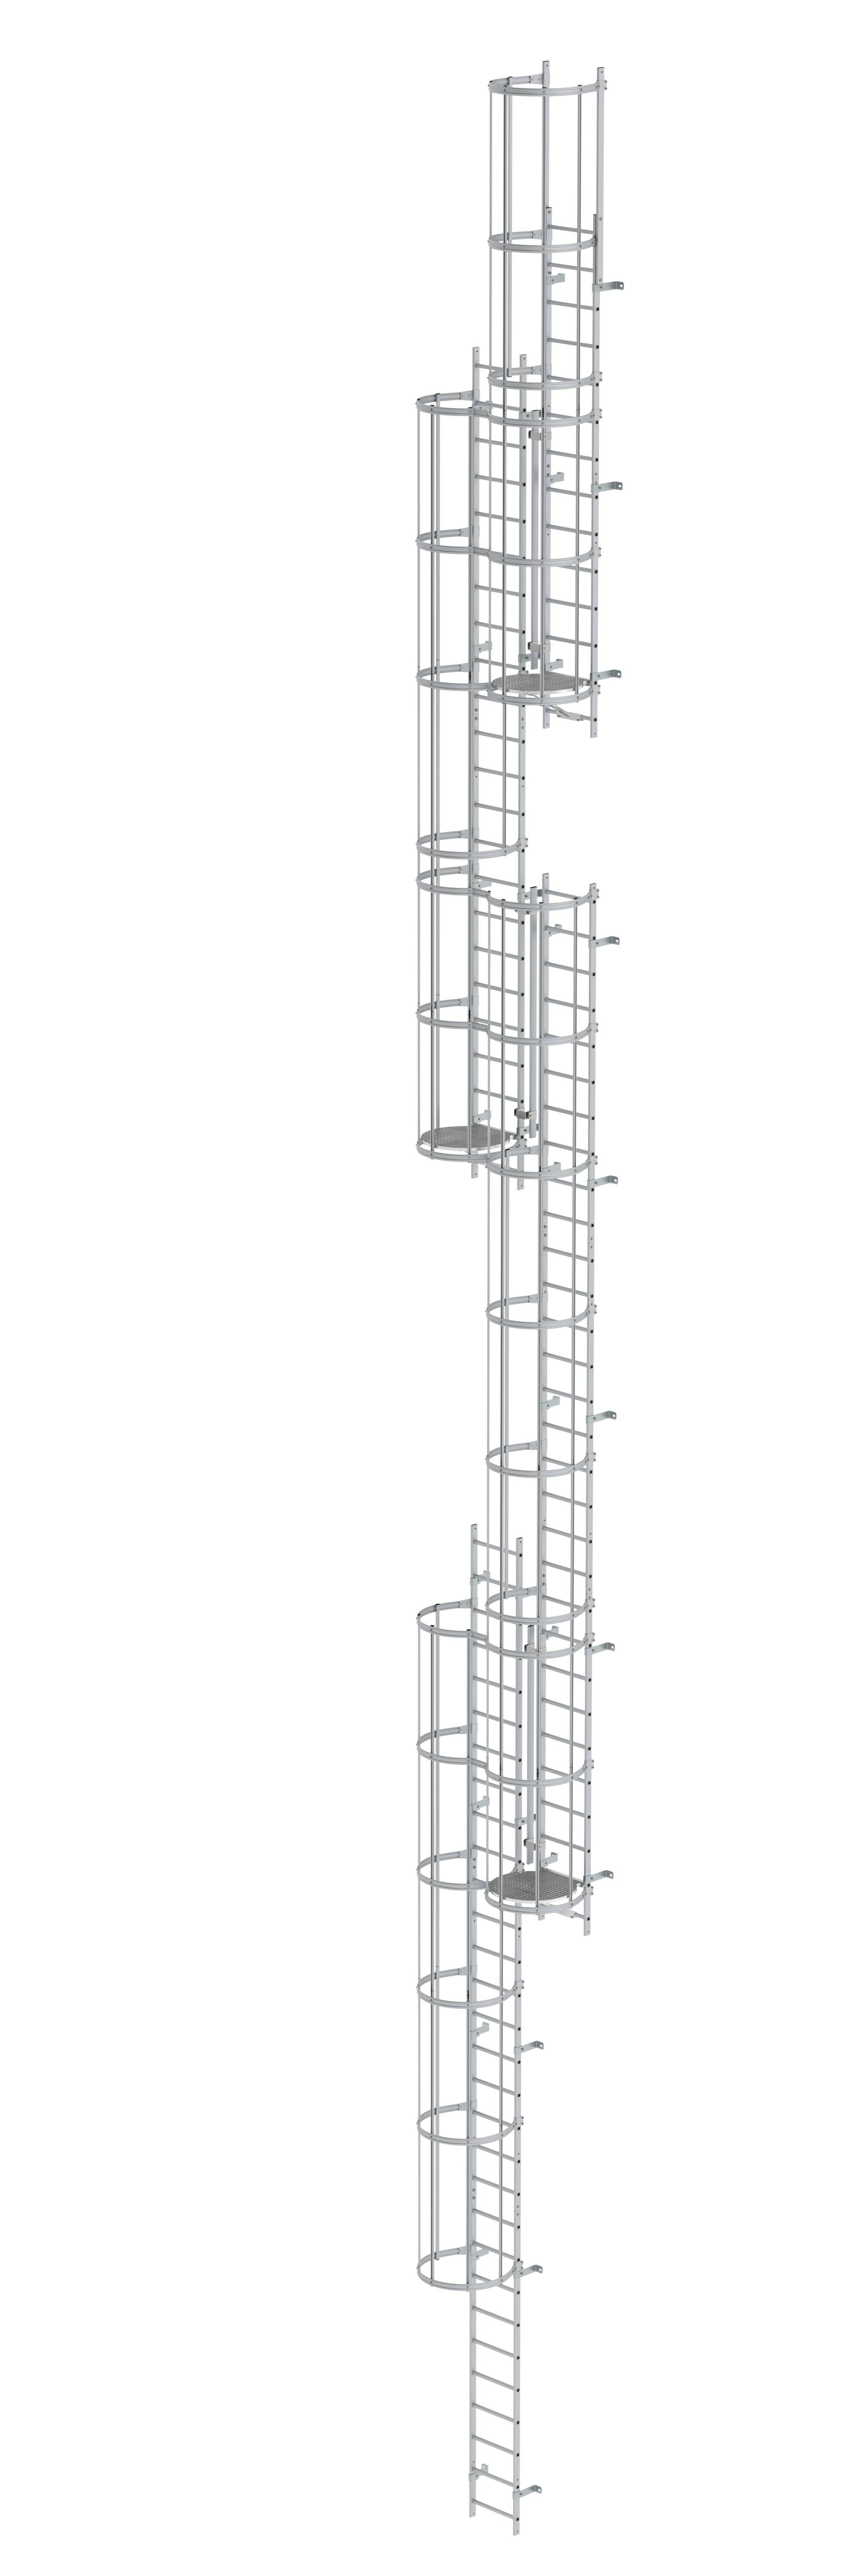 Mehrzügige Steigleiter mit Rückenschutz (Maschinen) Aluminium eloxiert 19,96m